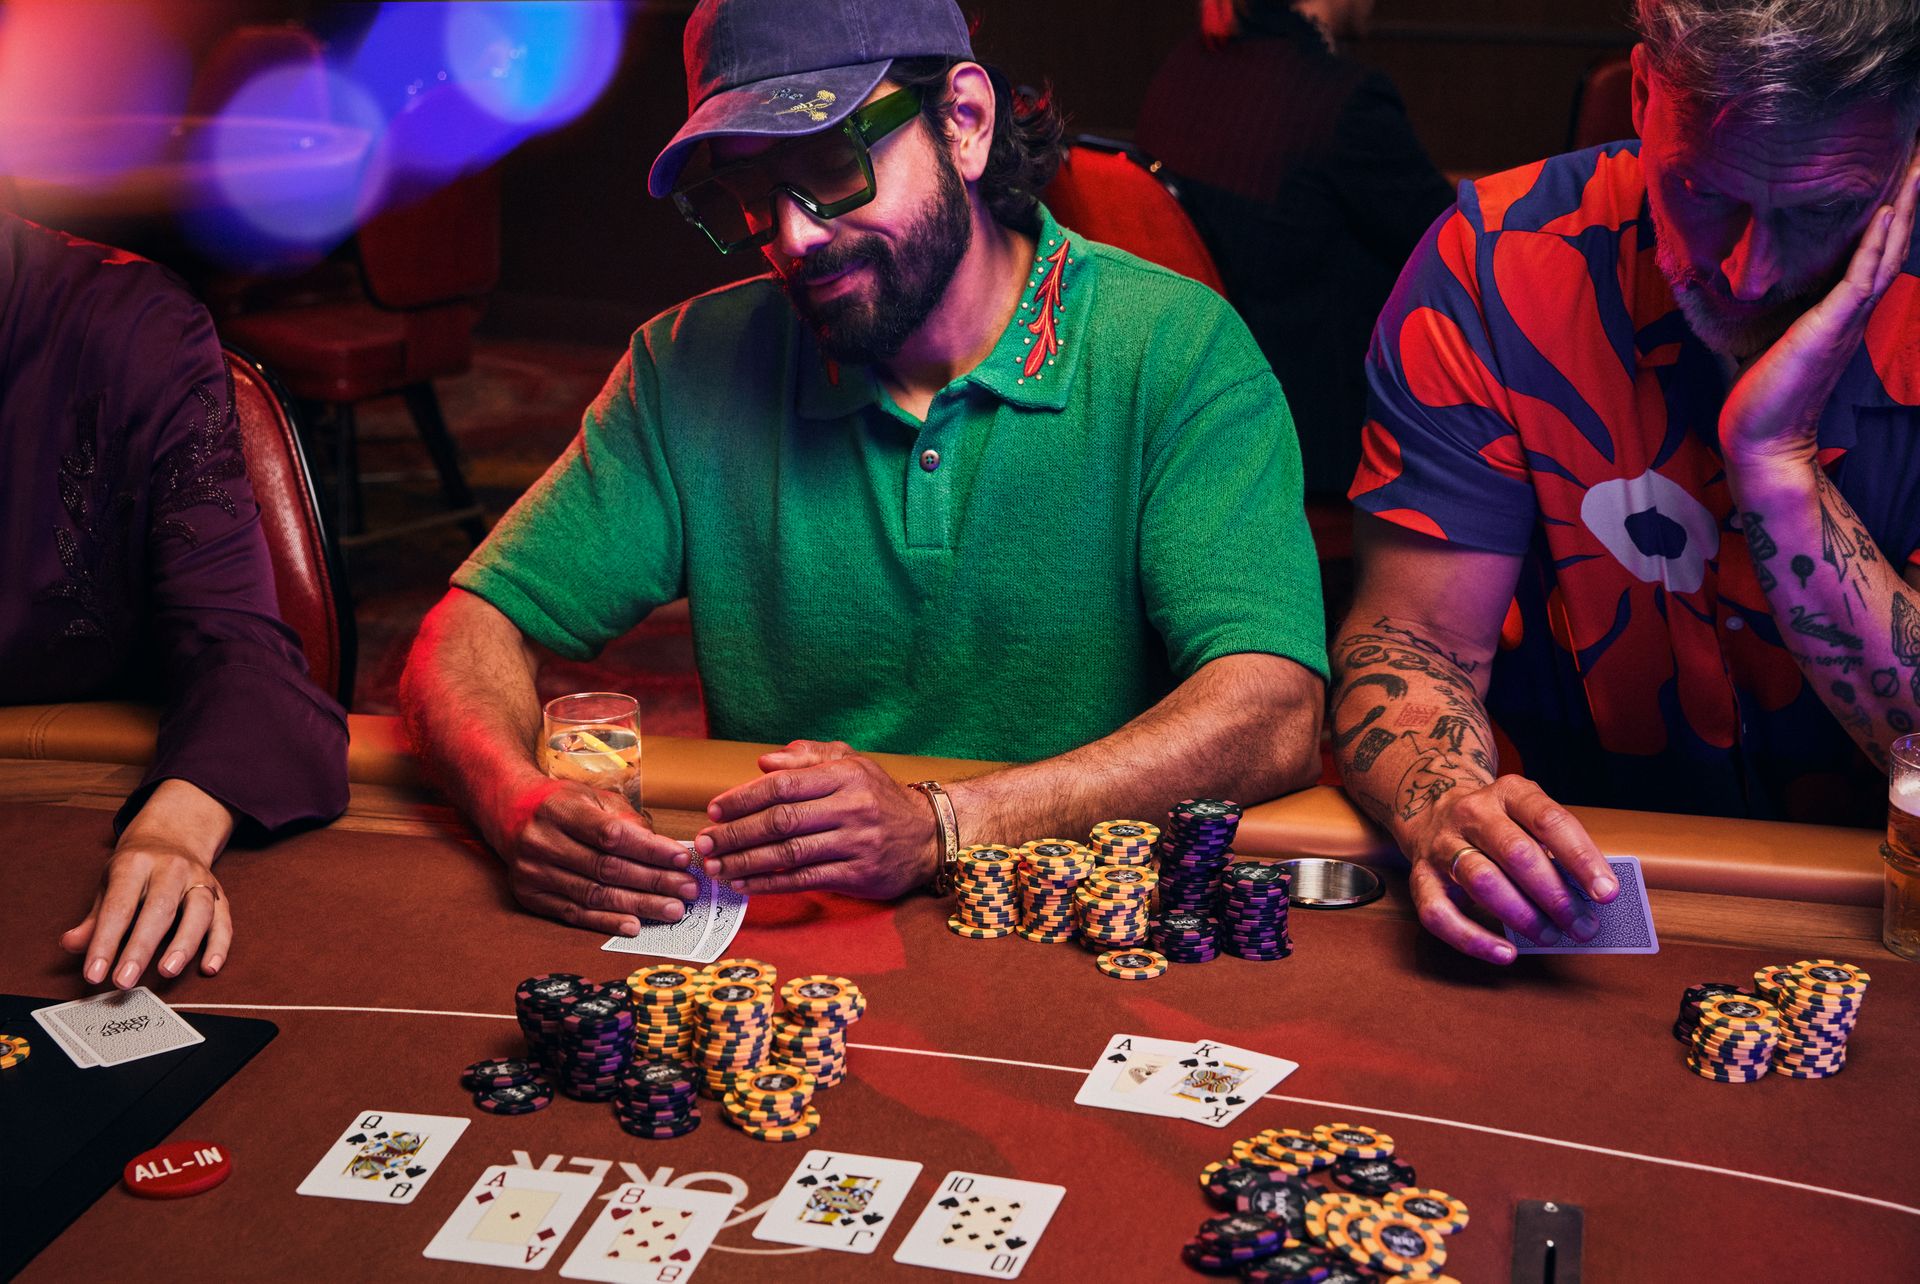 holland-casino-poker-tafel-met-drie-gasten-op-live-poker-toernooi--waarvan-middelste-gast-kaarten-bekijkt